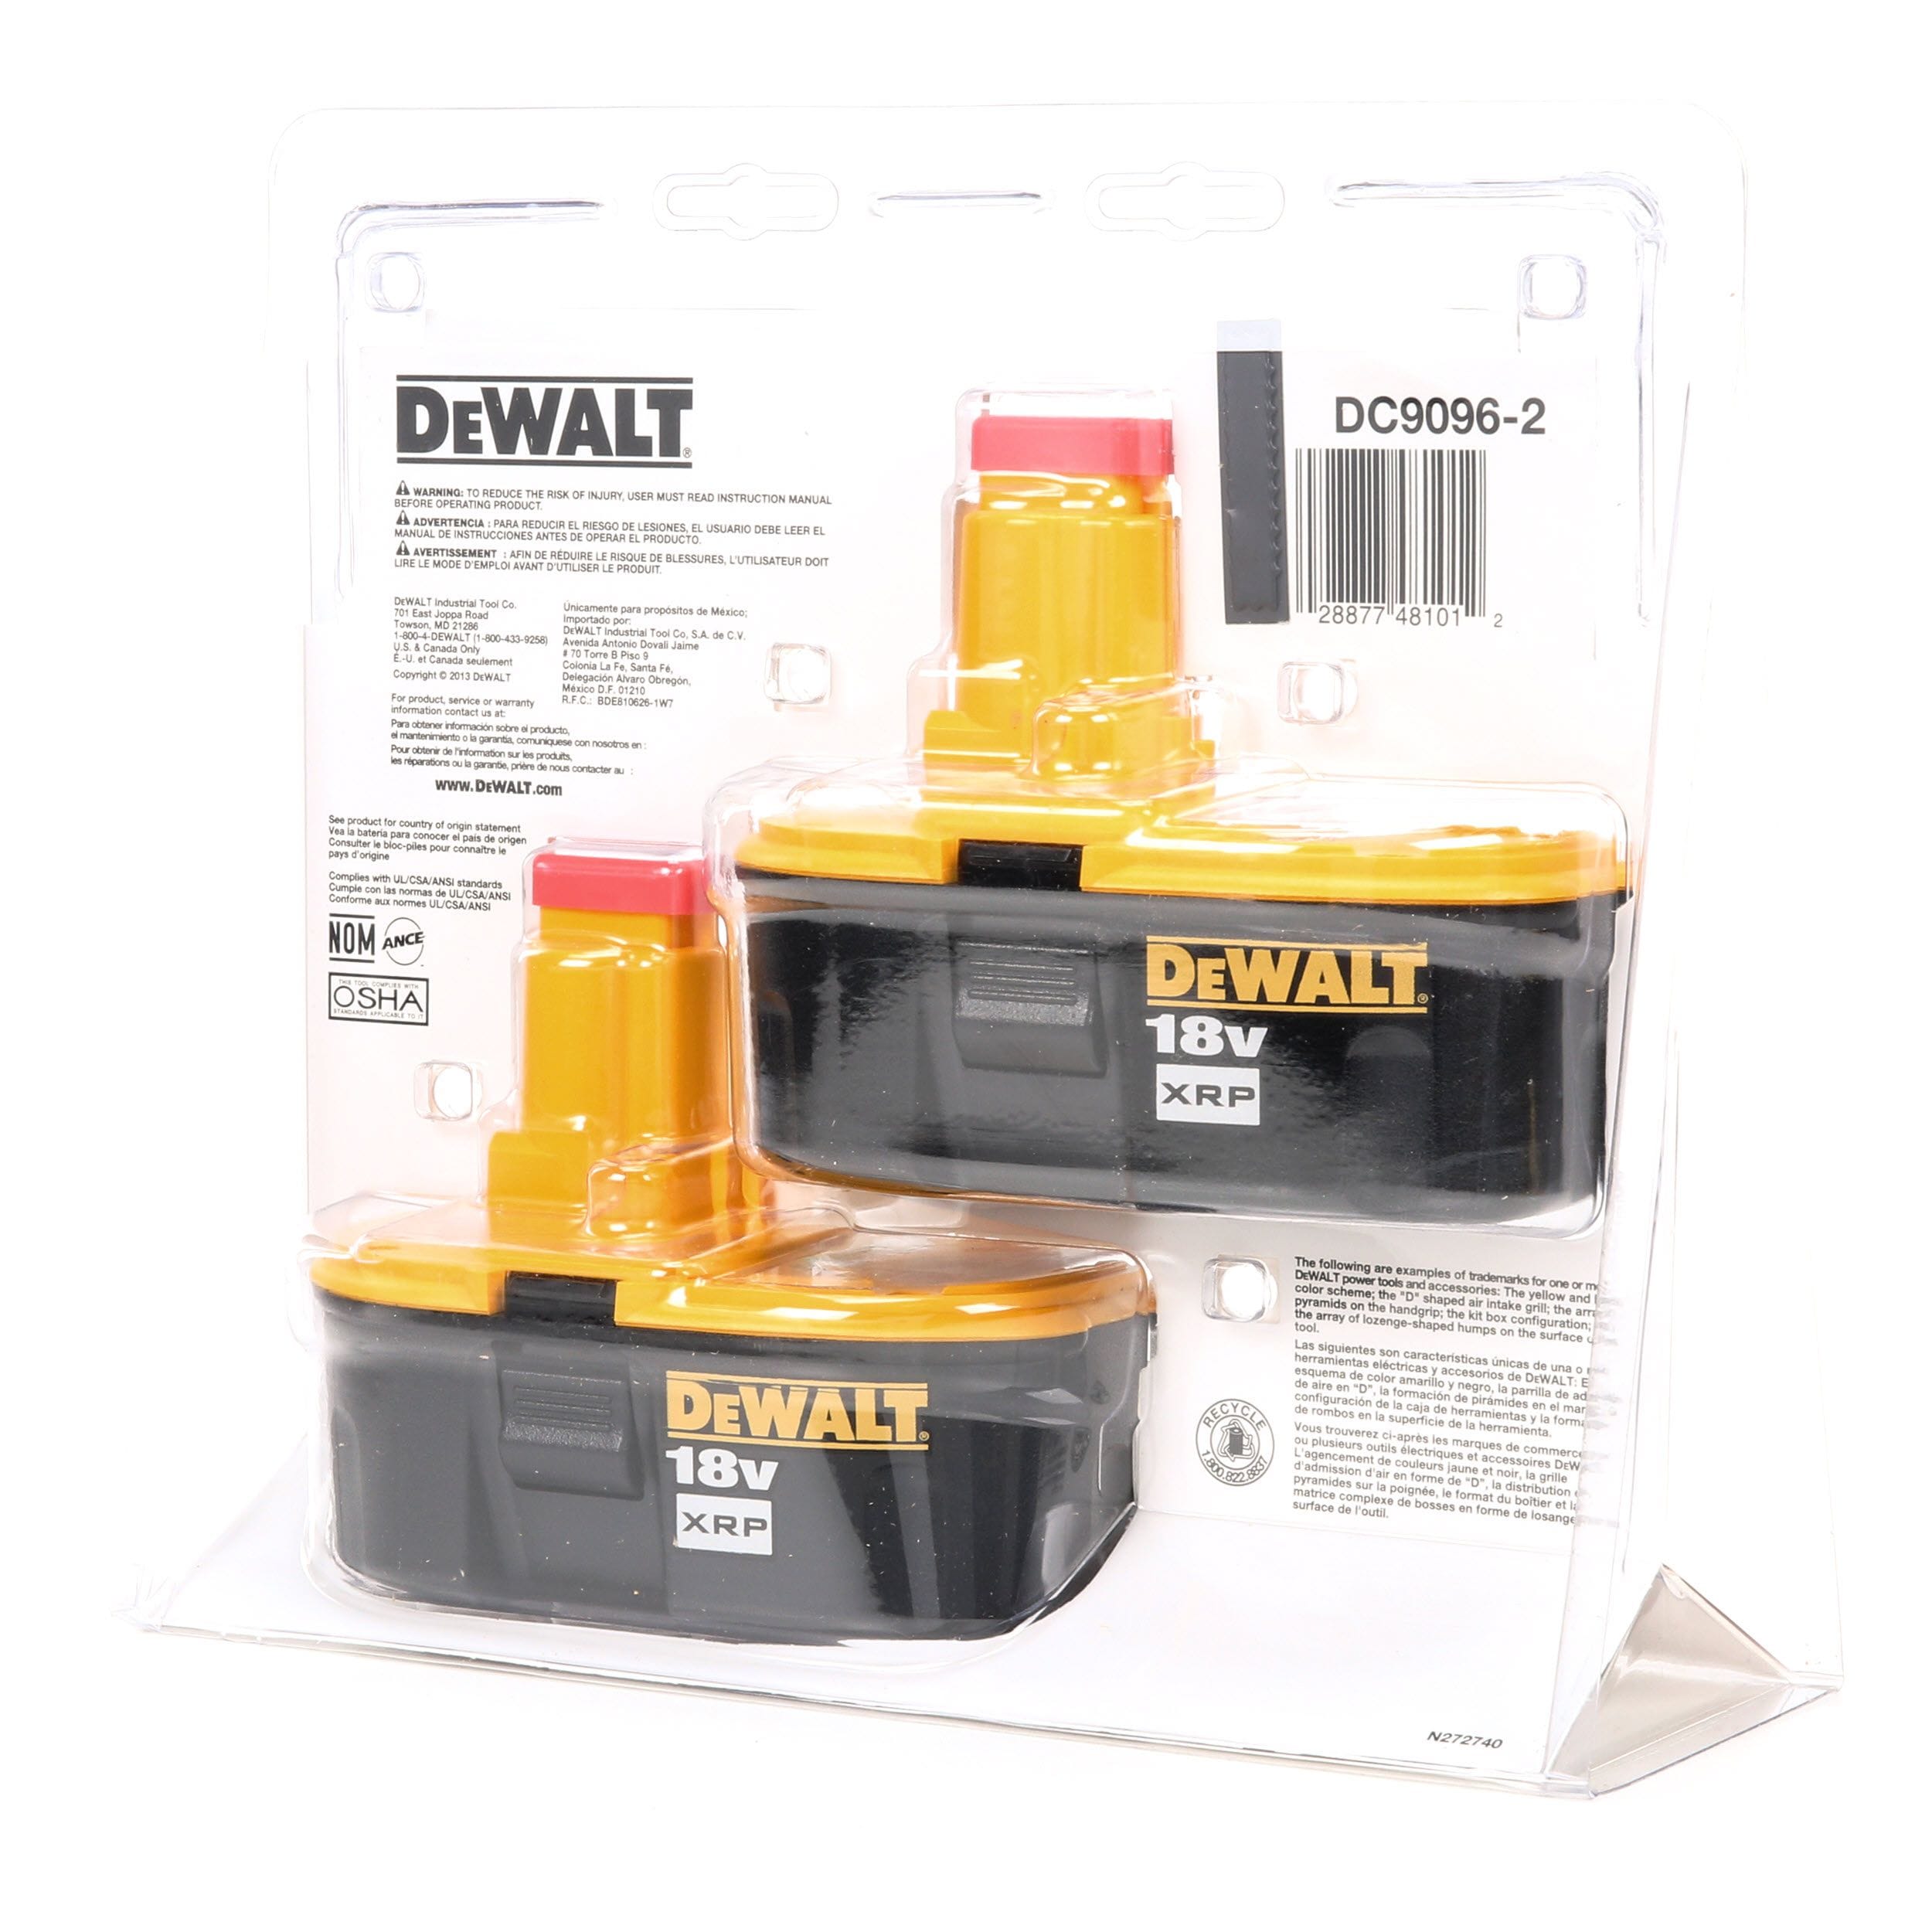 DEWALT 18V XRP Battery Pack for sale online 